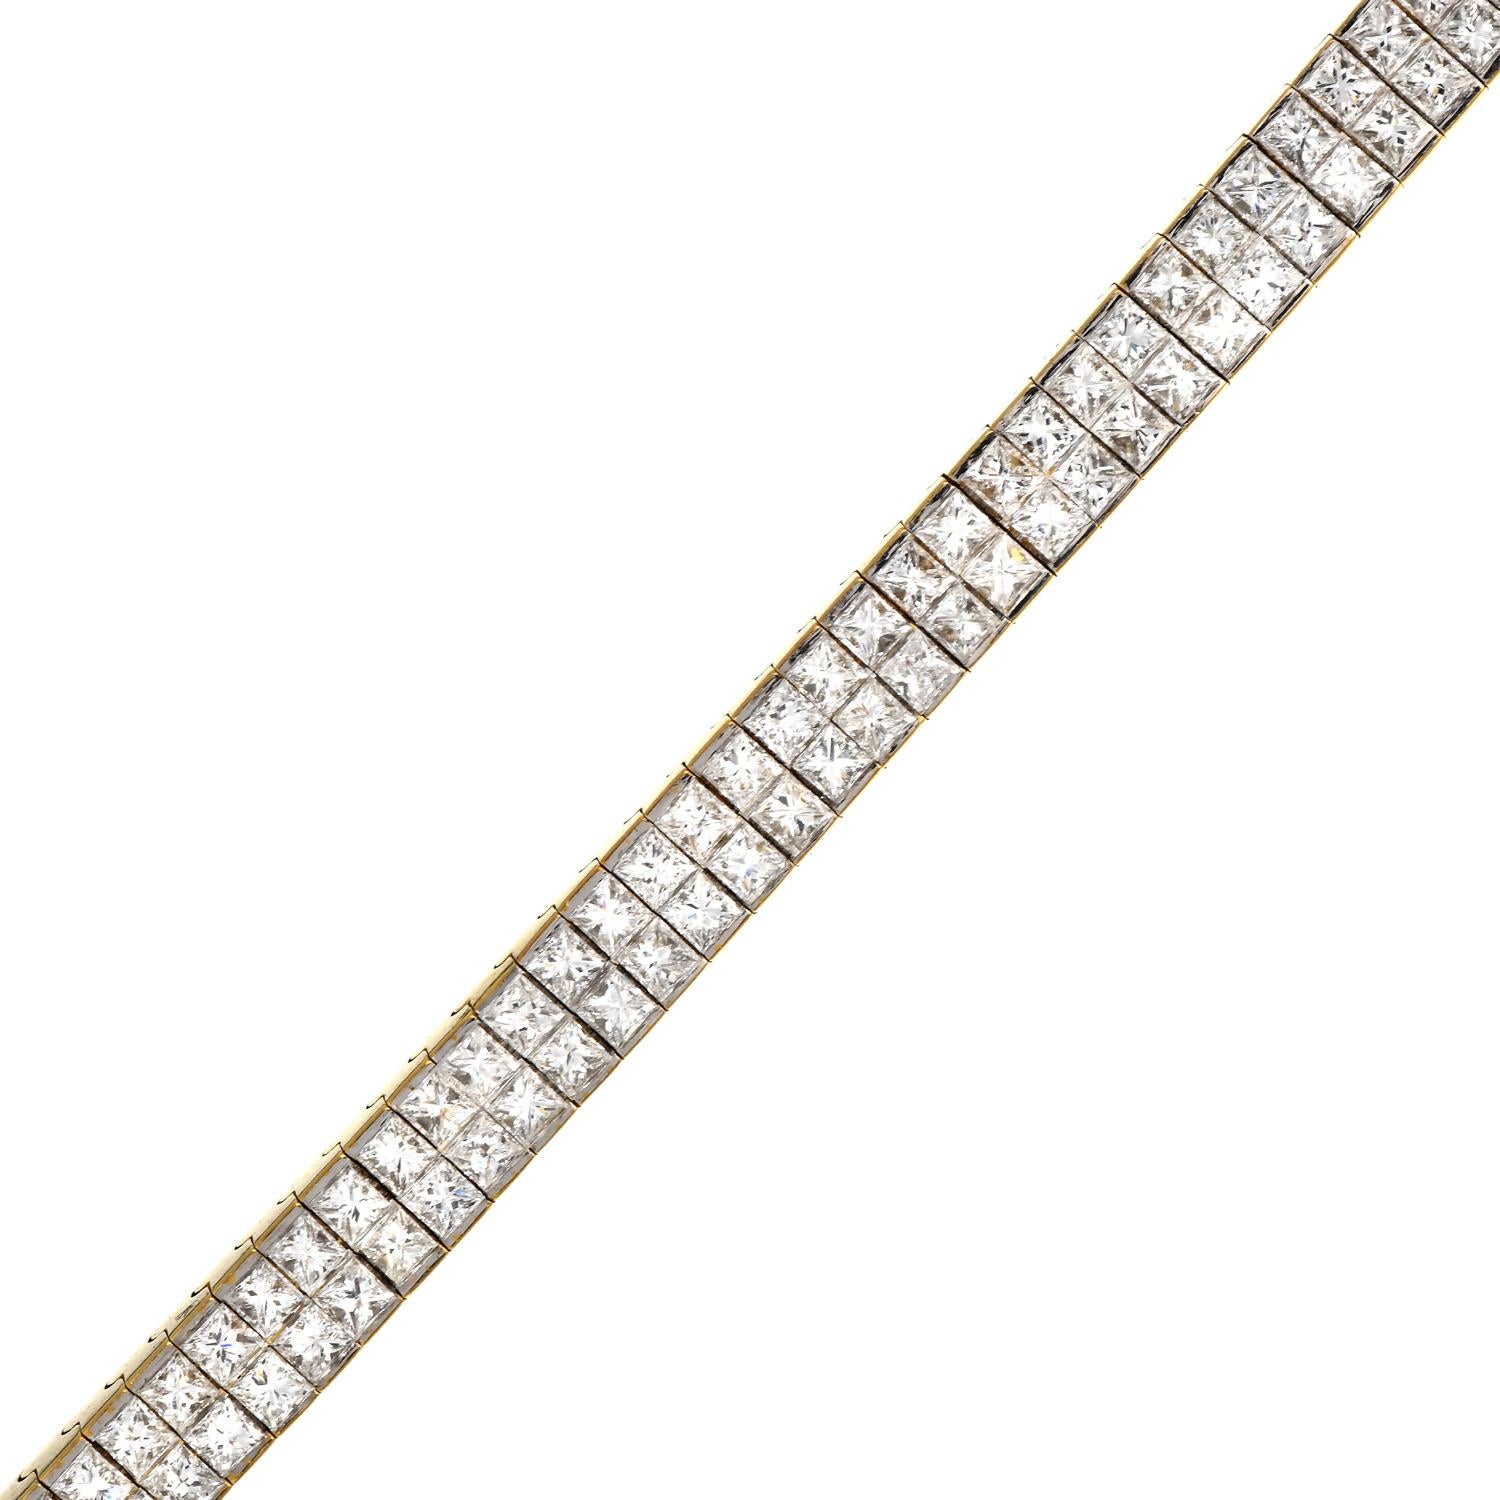 moderne 18k gold and diamond bracelets